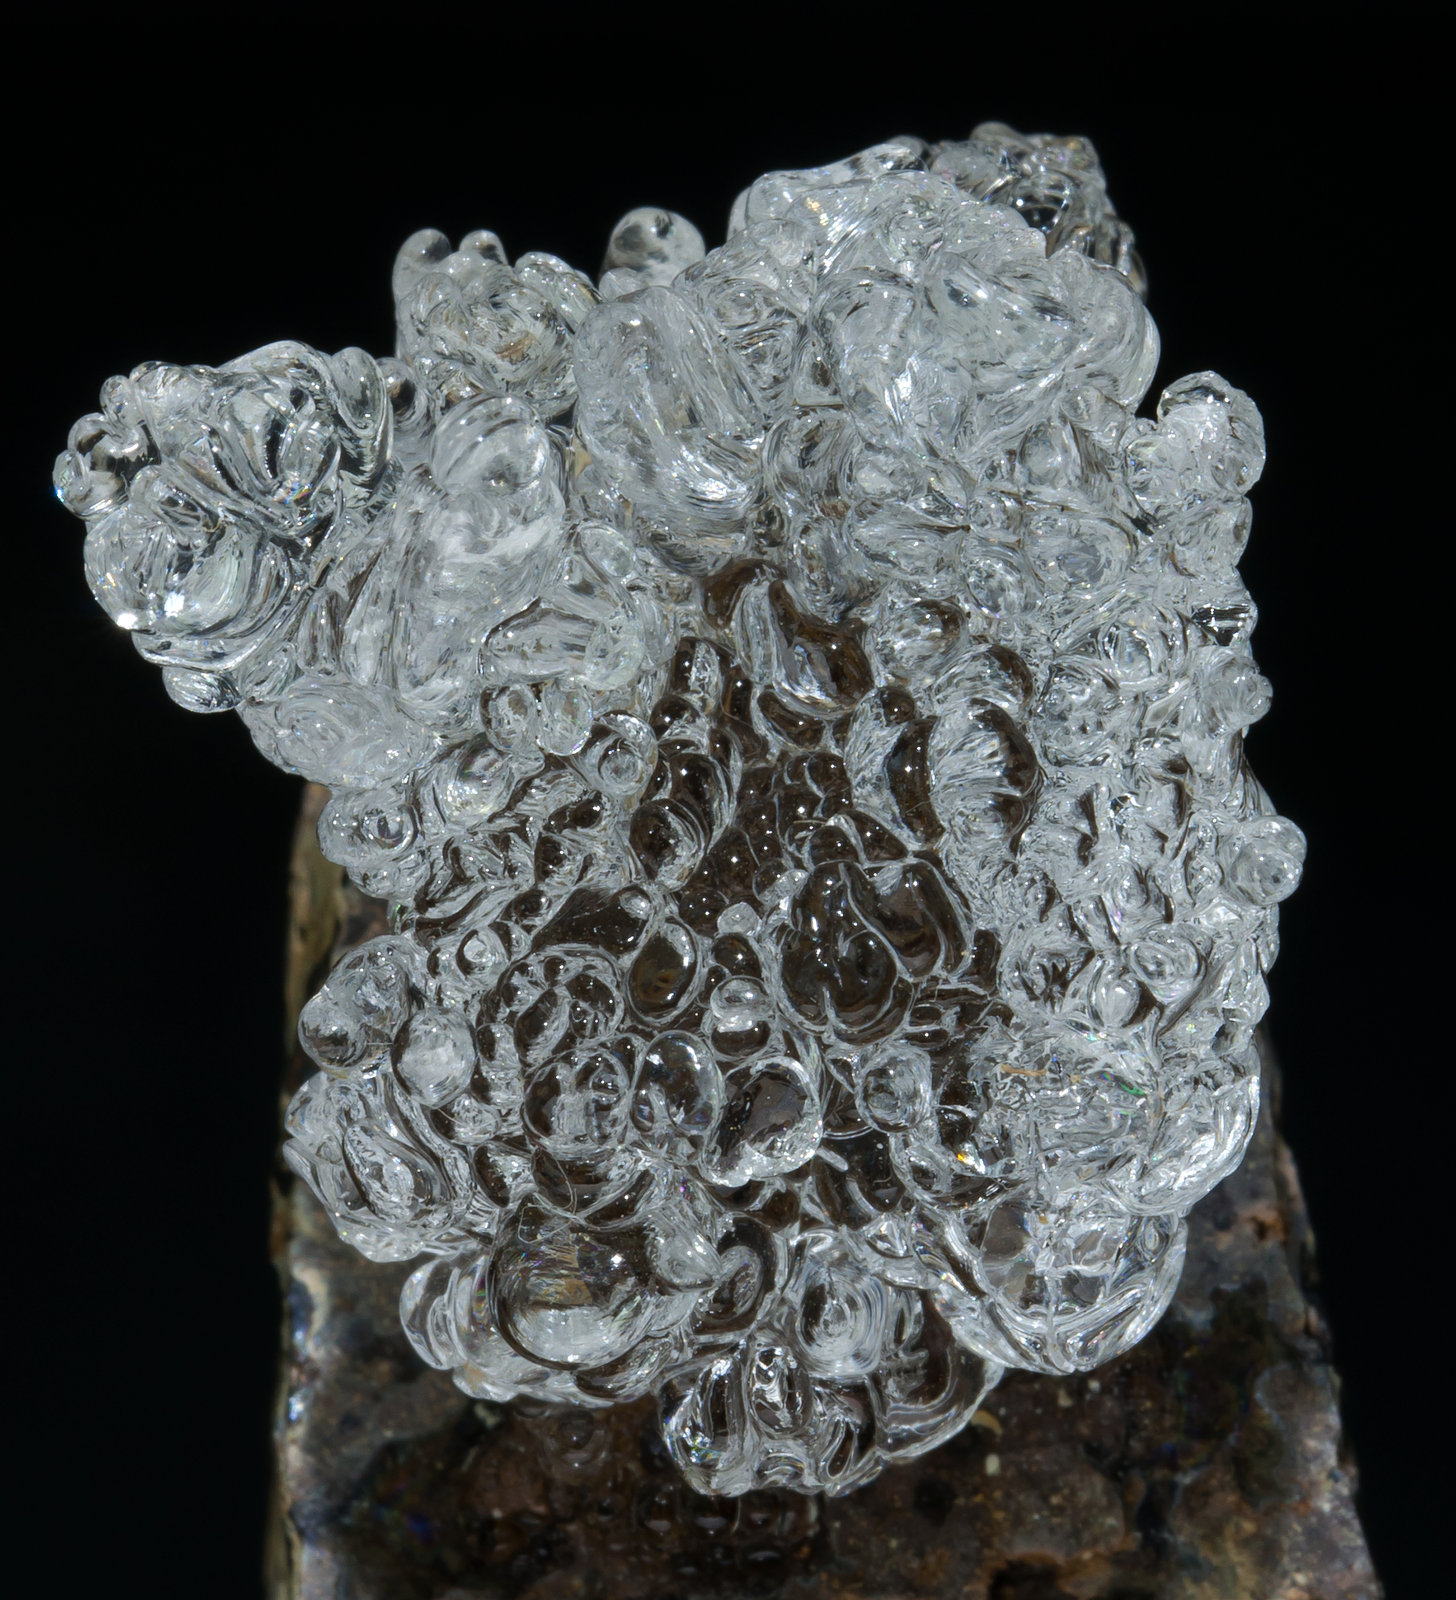 specimens/s_imagesAA6/Opal_hyalite-ME47AA6d.jpg